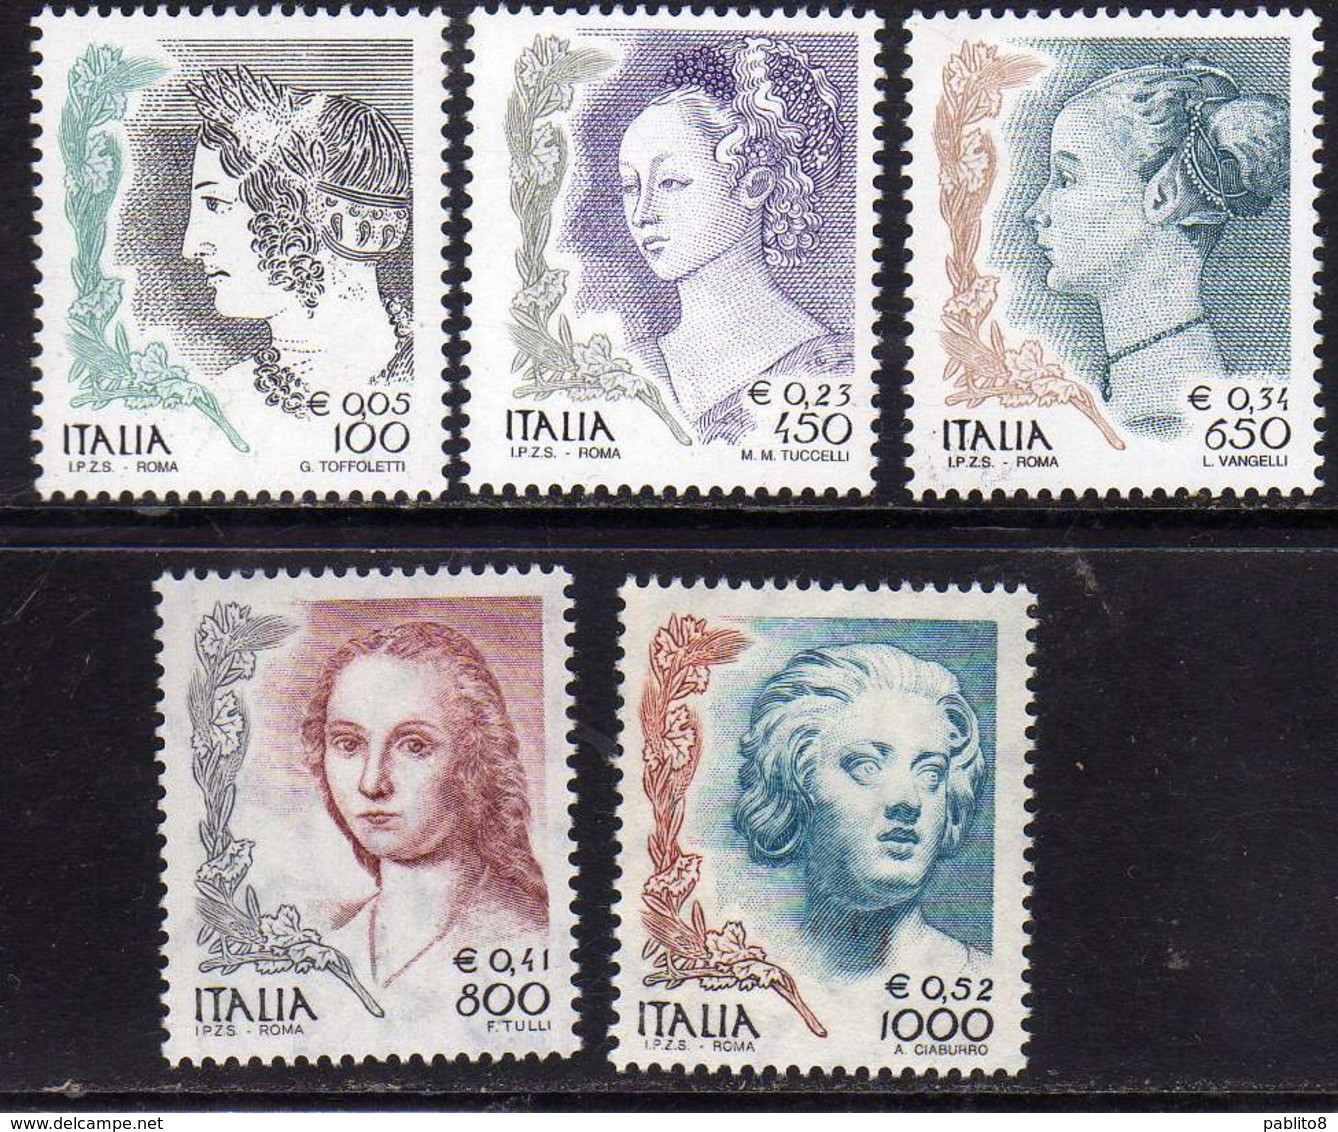 ITALIA REPUBBLICA ITALY REPUBLIC 1999 DONNA NELL'ARTE II EMISSIONE WOMAN IN ART SERIE COMPLETA COMPLETE SET MNH - 1991-00:  Nuovi